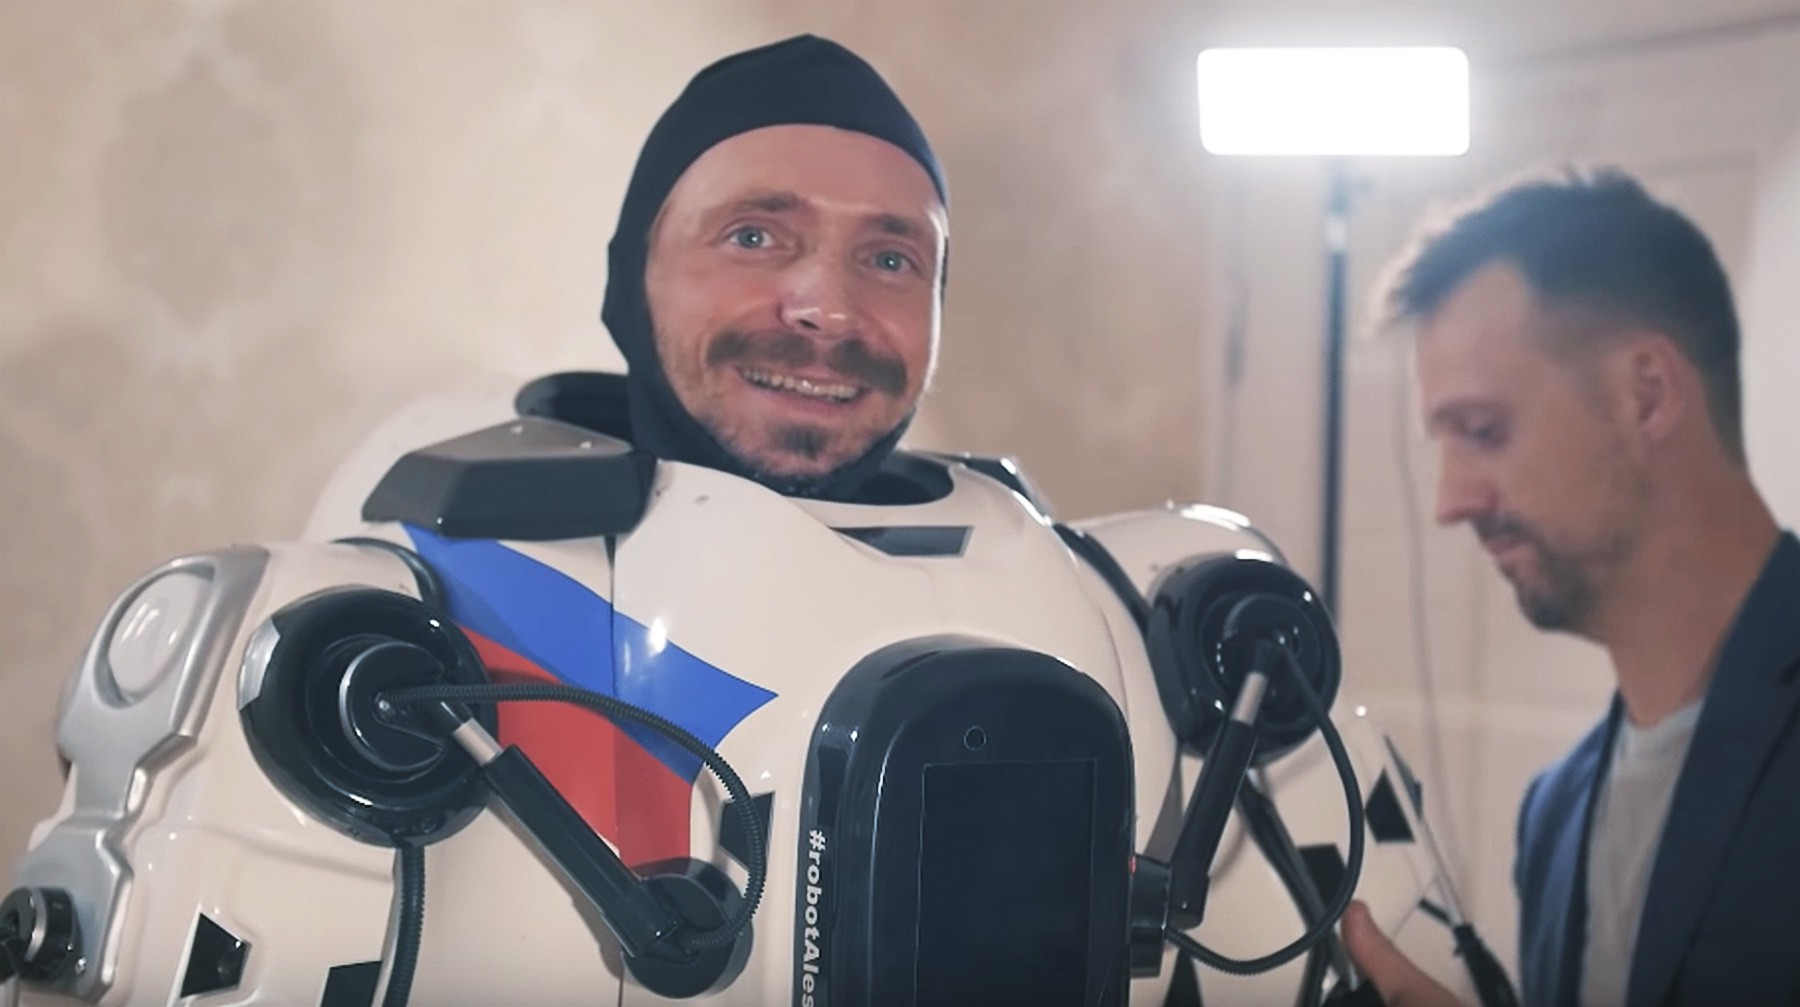 Dailystorm - Организаторы форума в Ярославле арендовали костюм «самого современного робота Бориса»